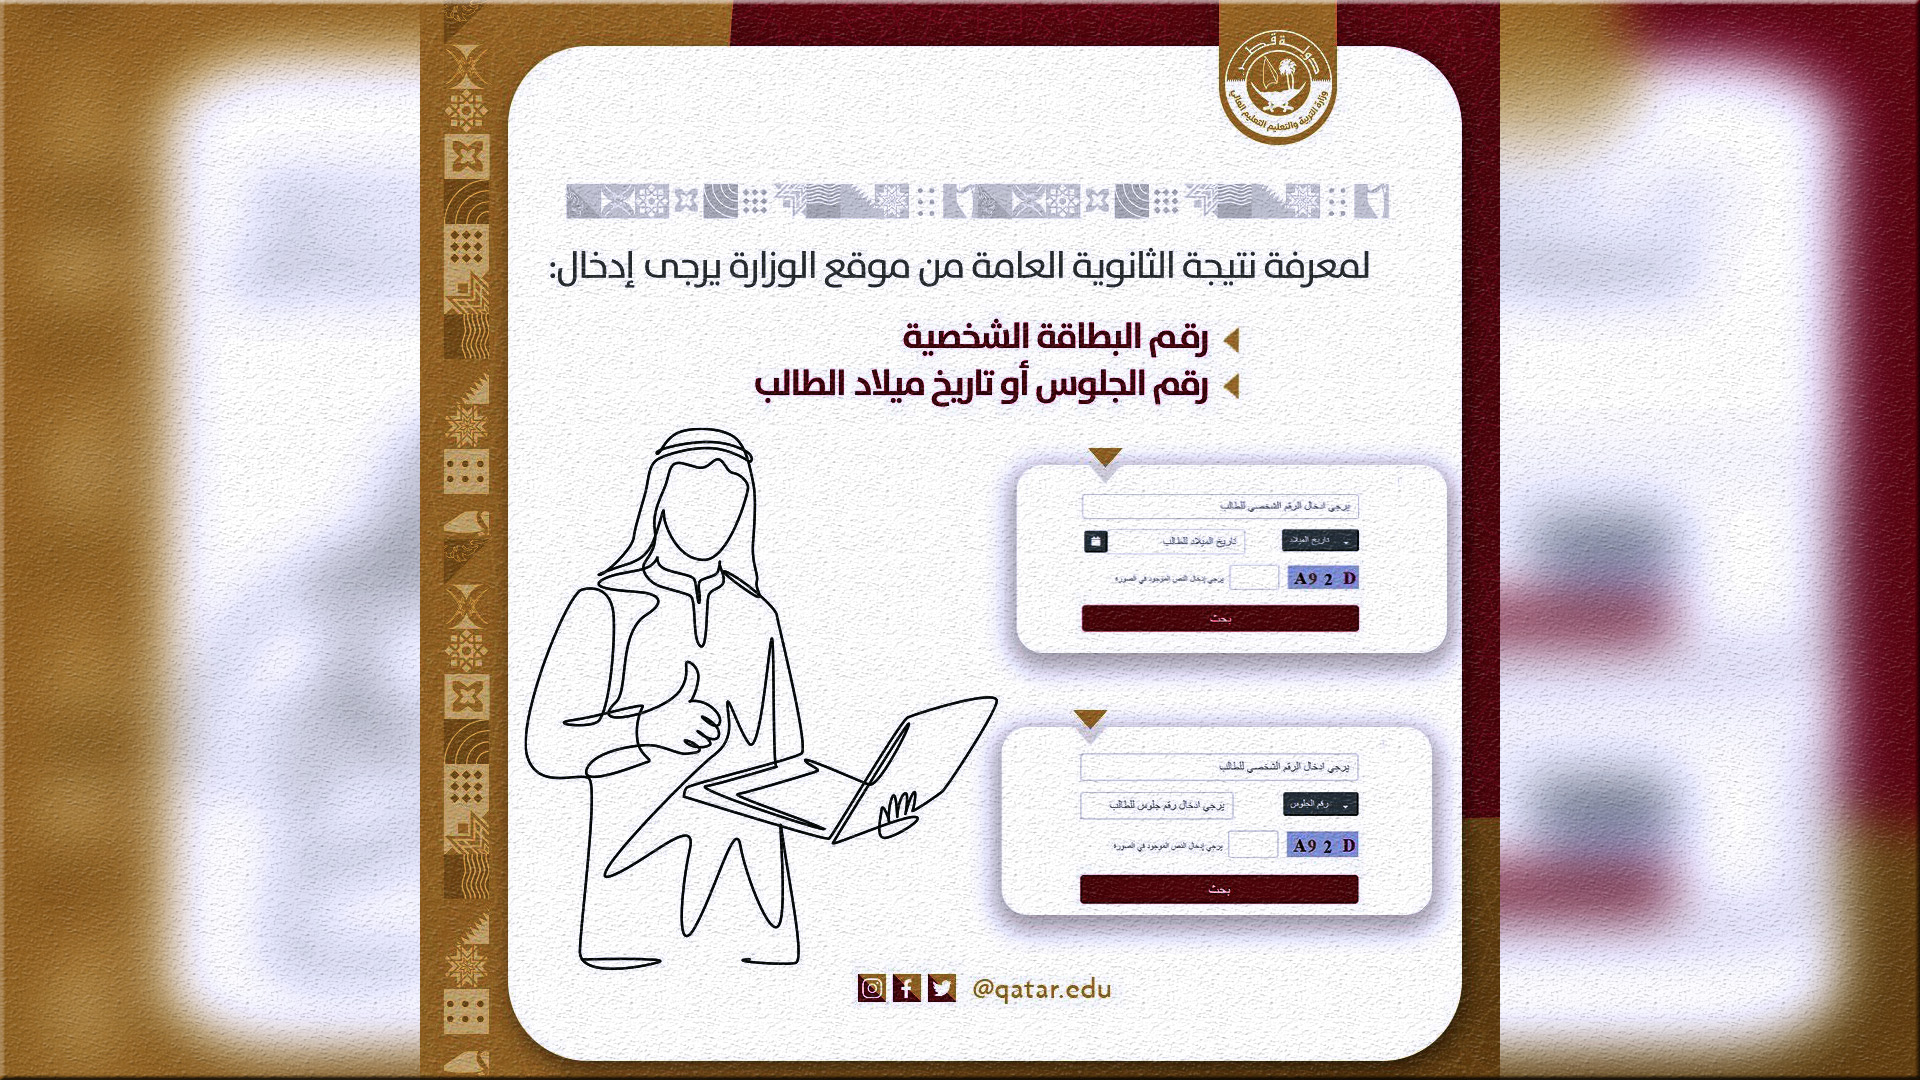 ظهرت نتائج الثانوية العامة 2022 في قطر احصل على رابطك الخاص للنتيجة القطرية الأن